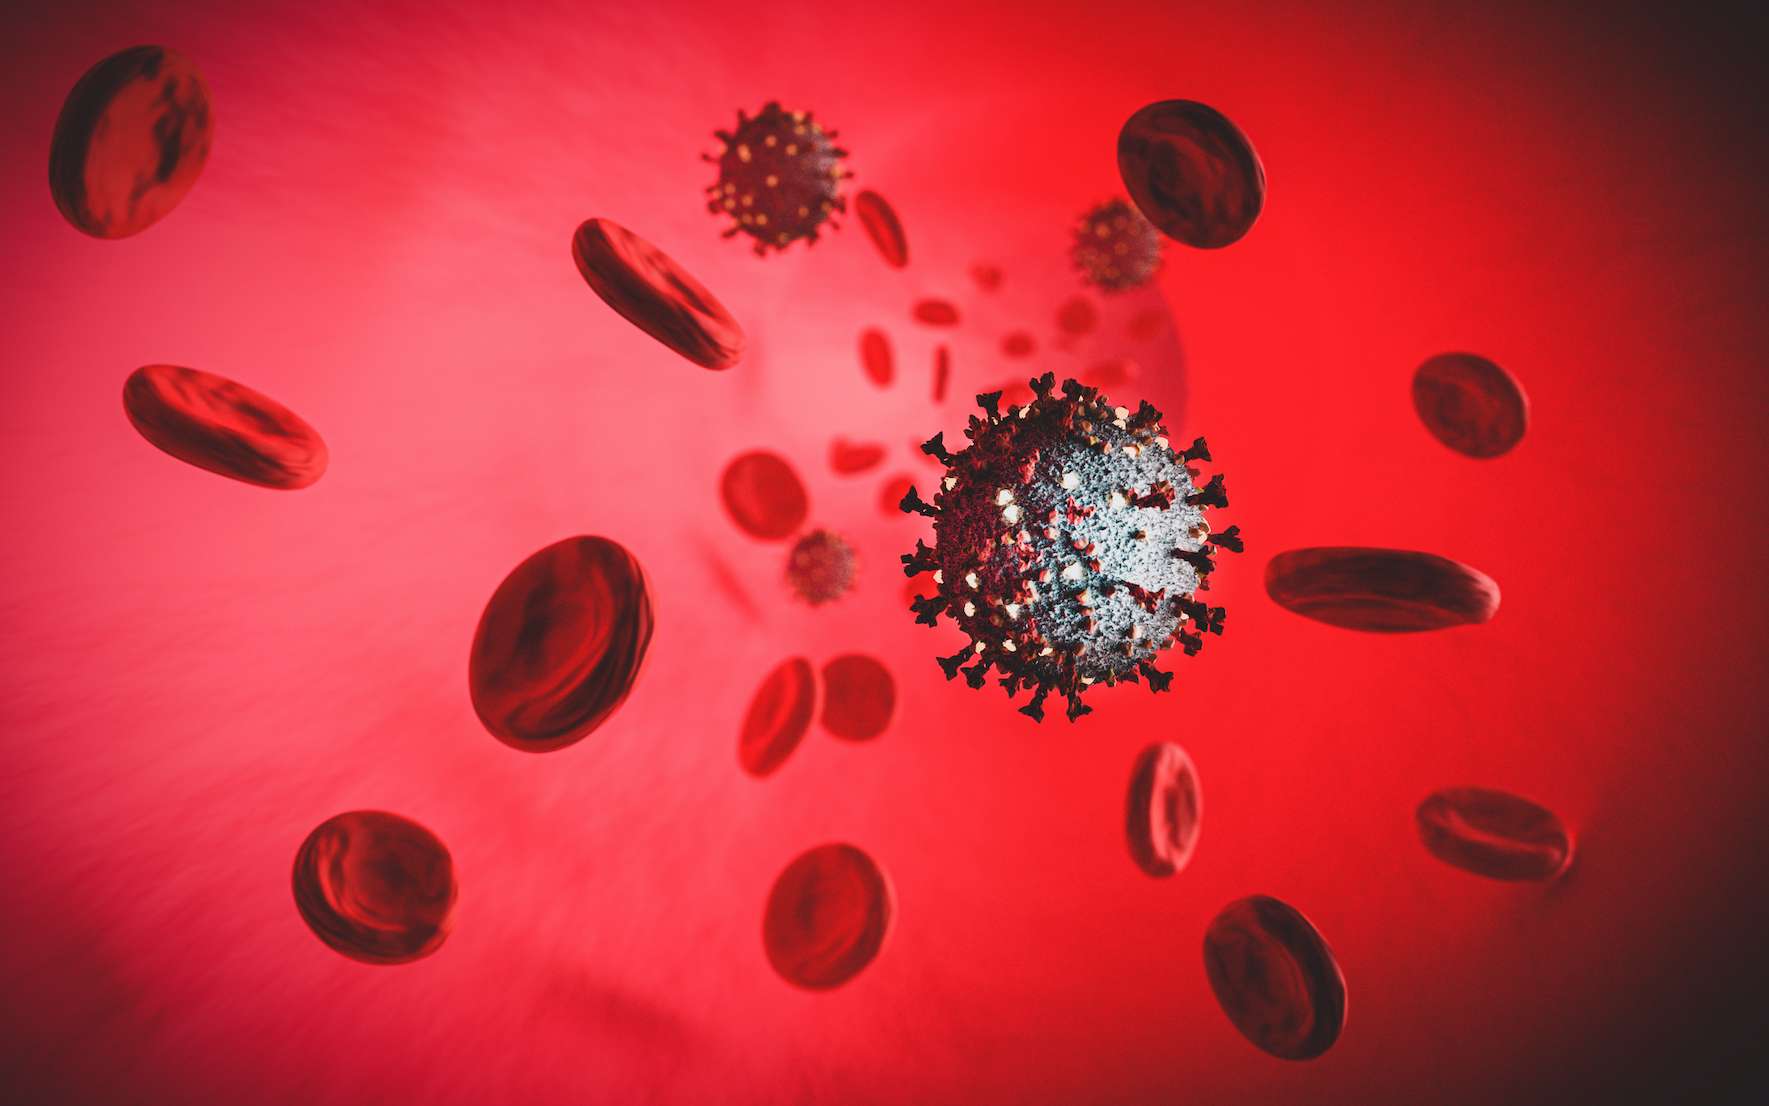 Les personnes de groupe sanguin A seraient plus sensibles au coronavirus